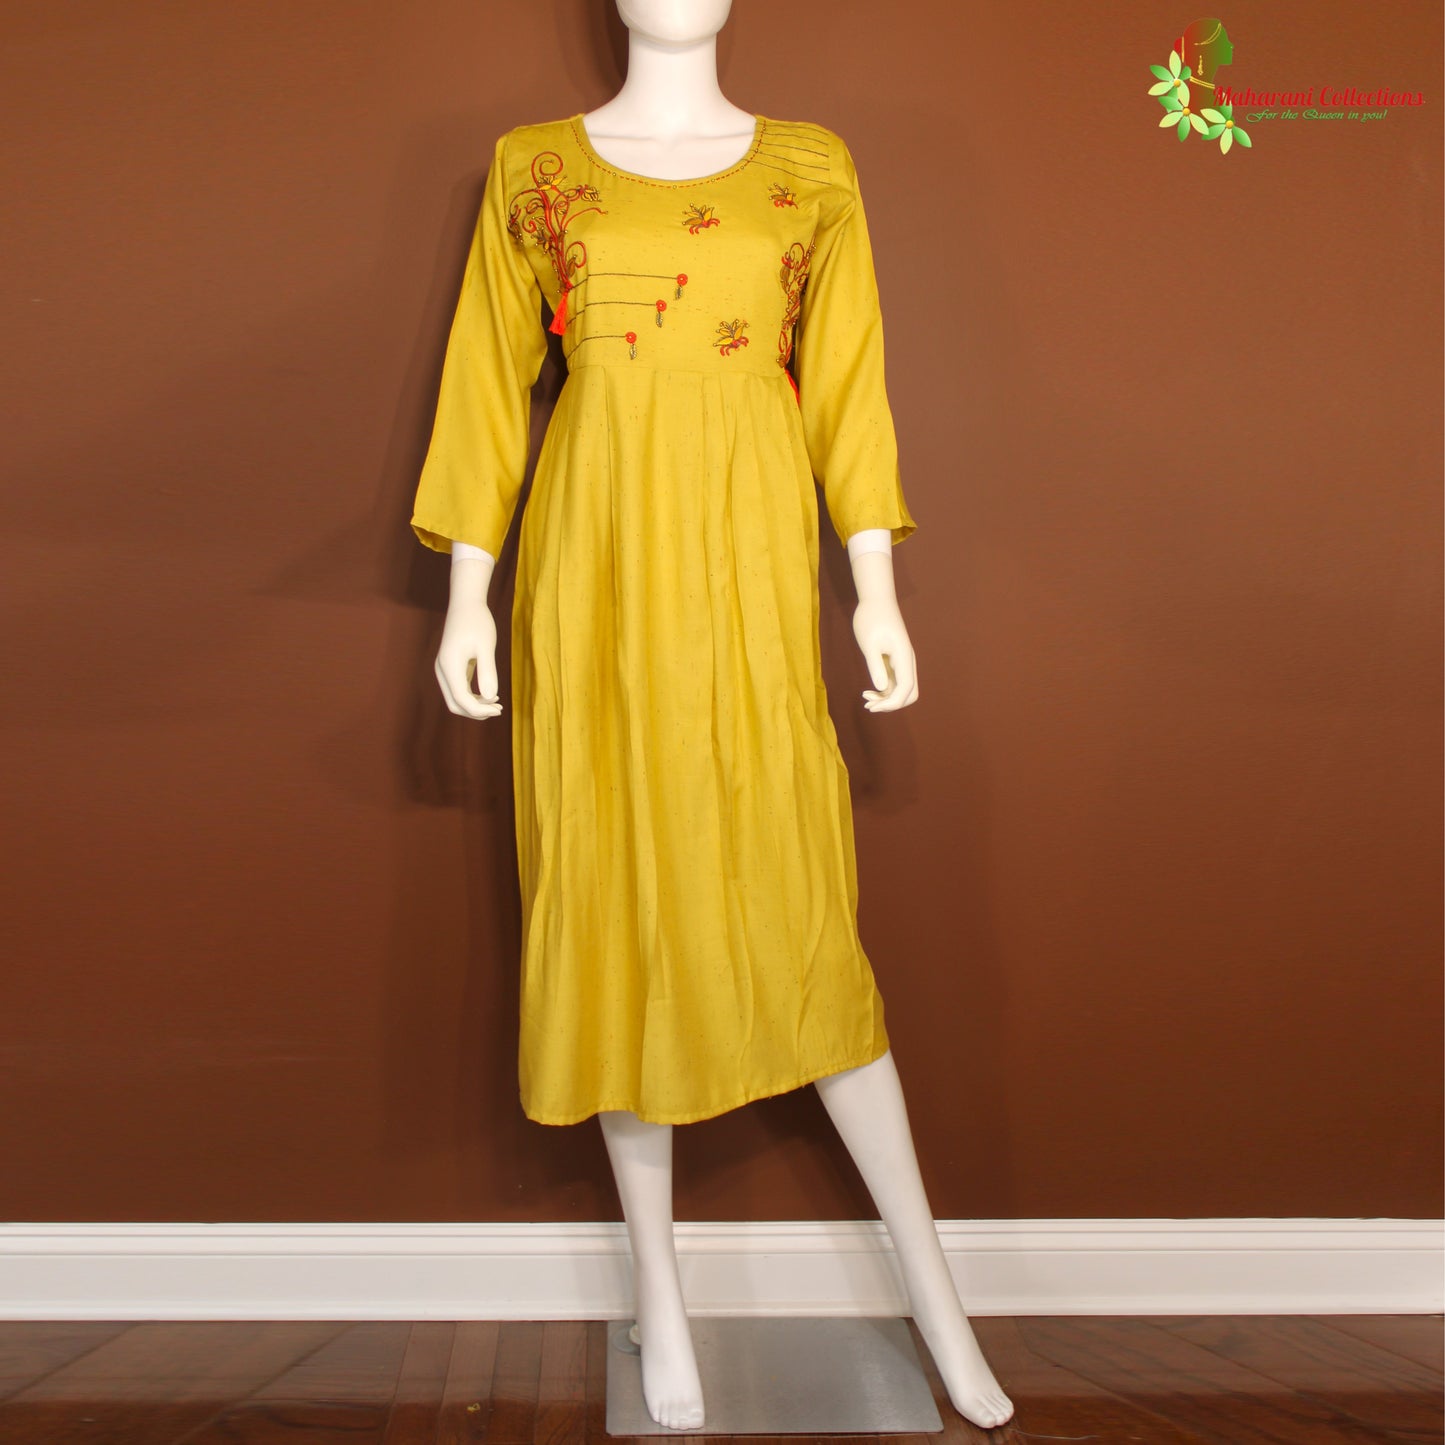 Maharani's Long Dress - Soft Cotton - Light Yellow (M)